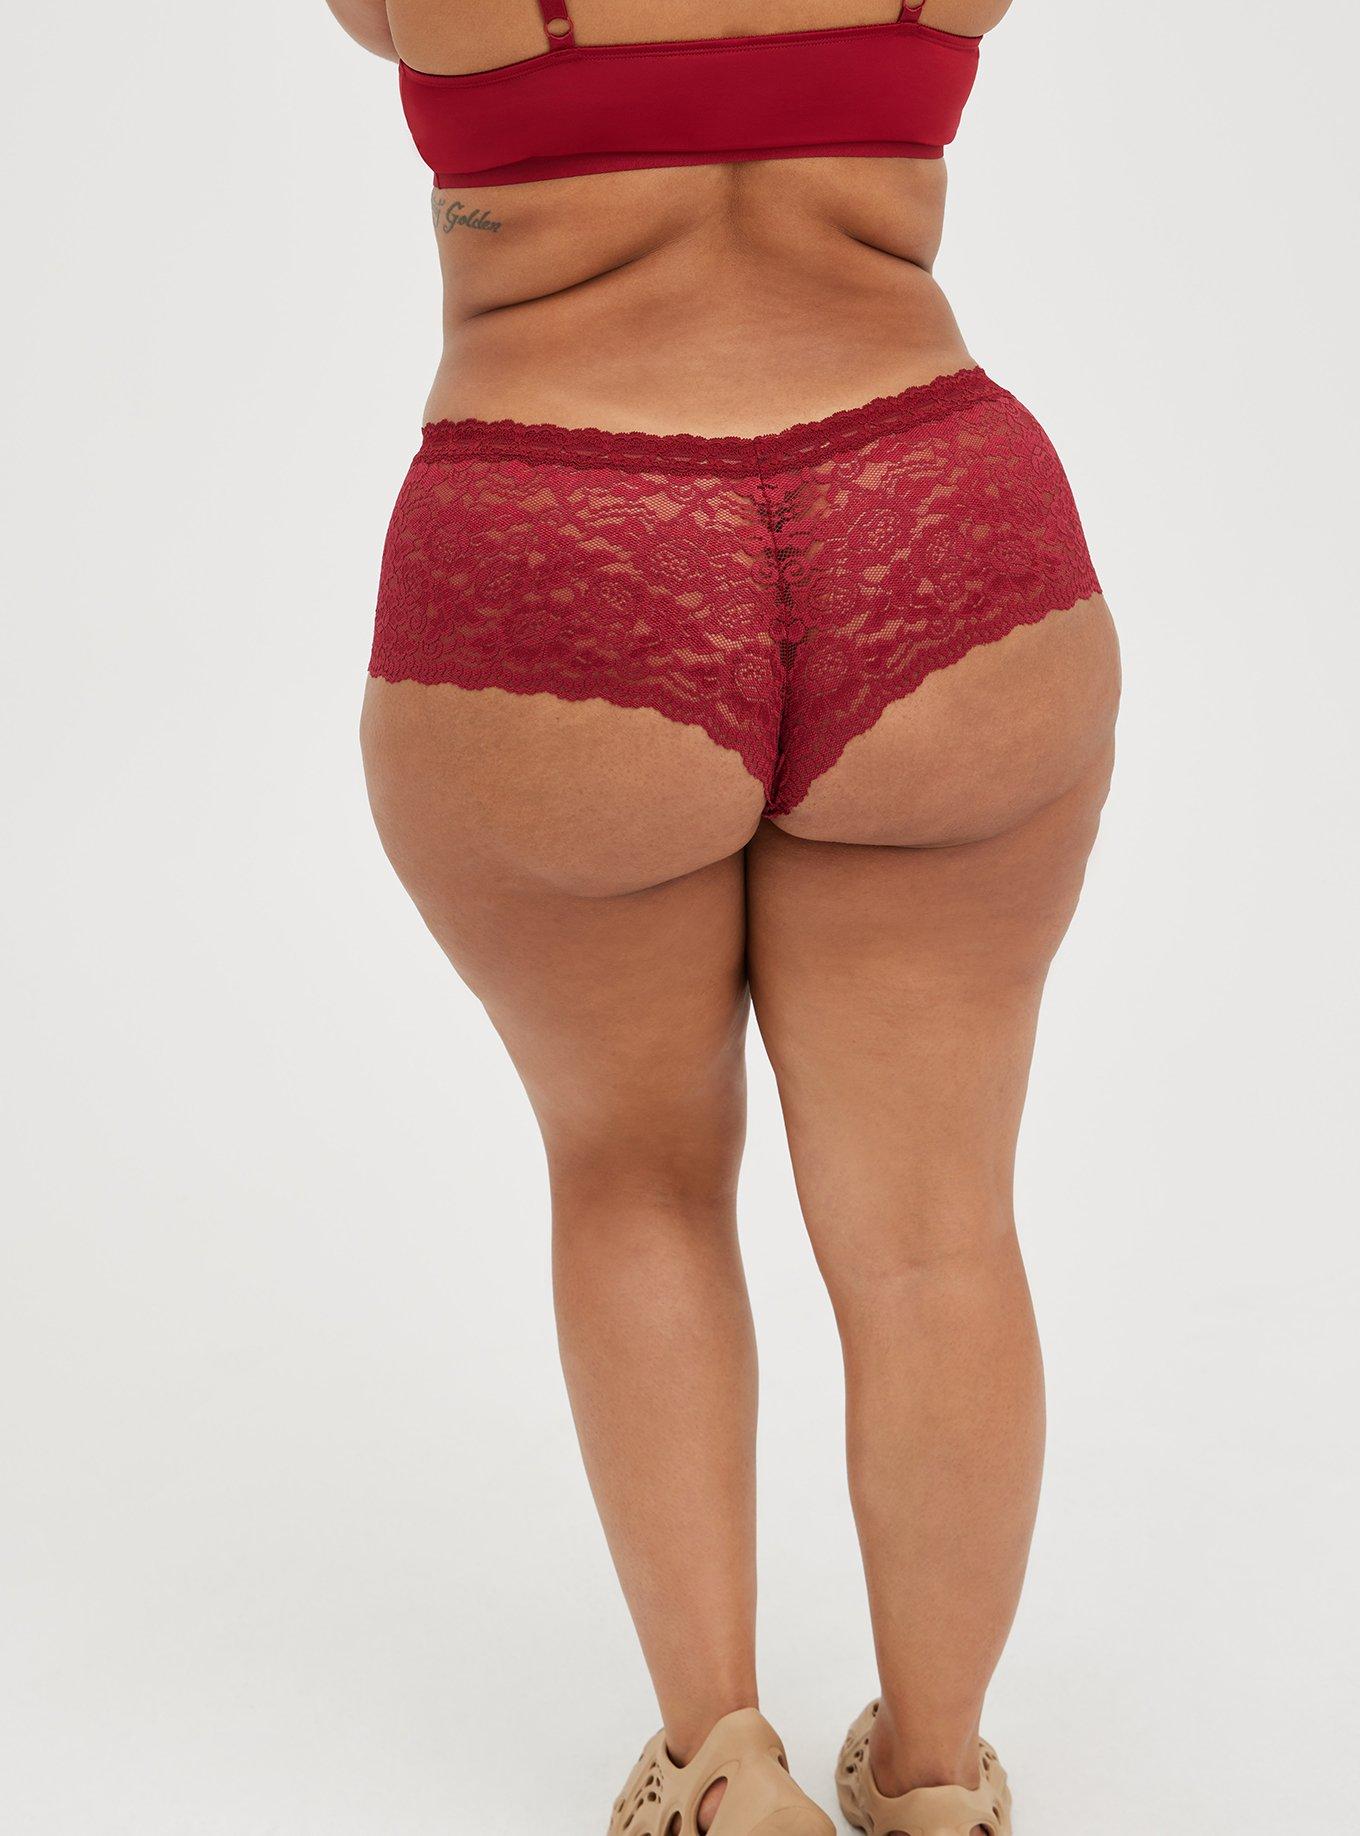 NWT Women's Torrid Cheeky Underwear Size 0